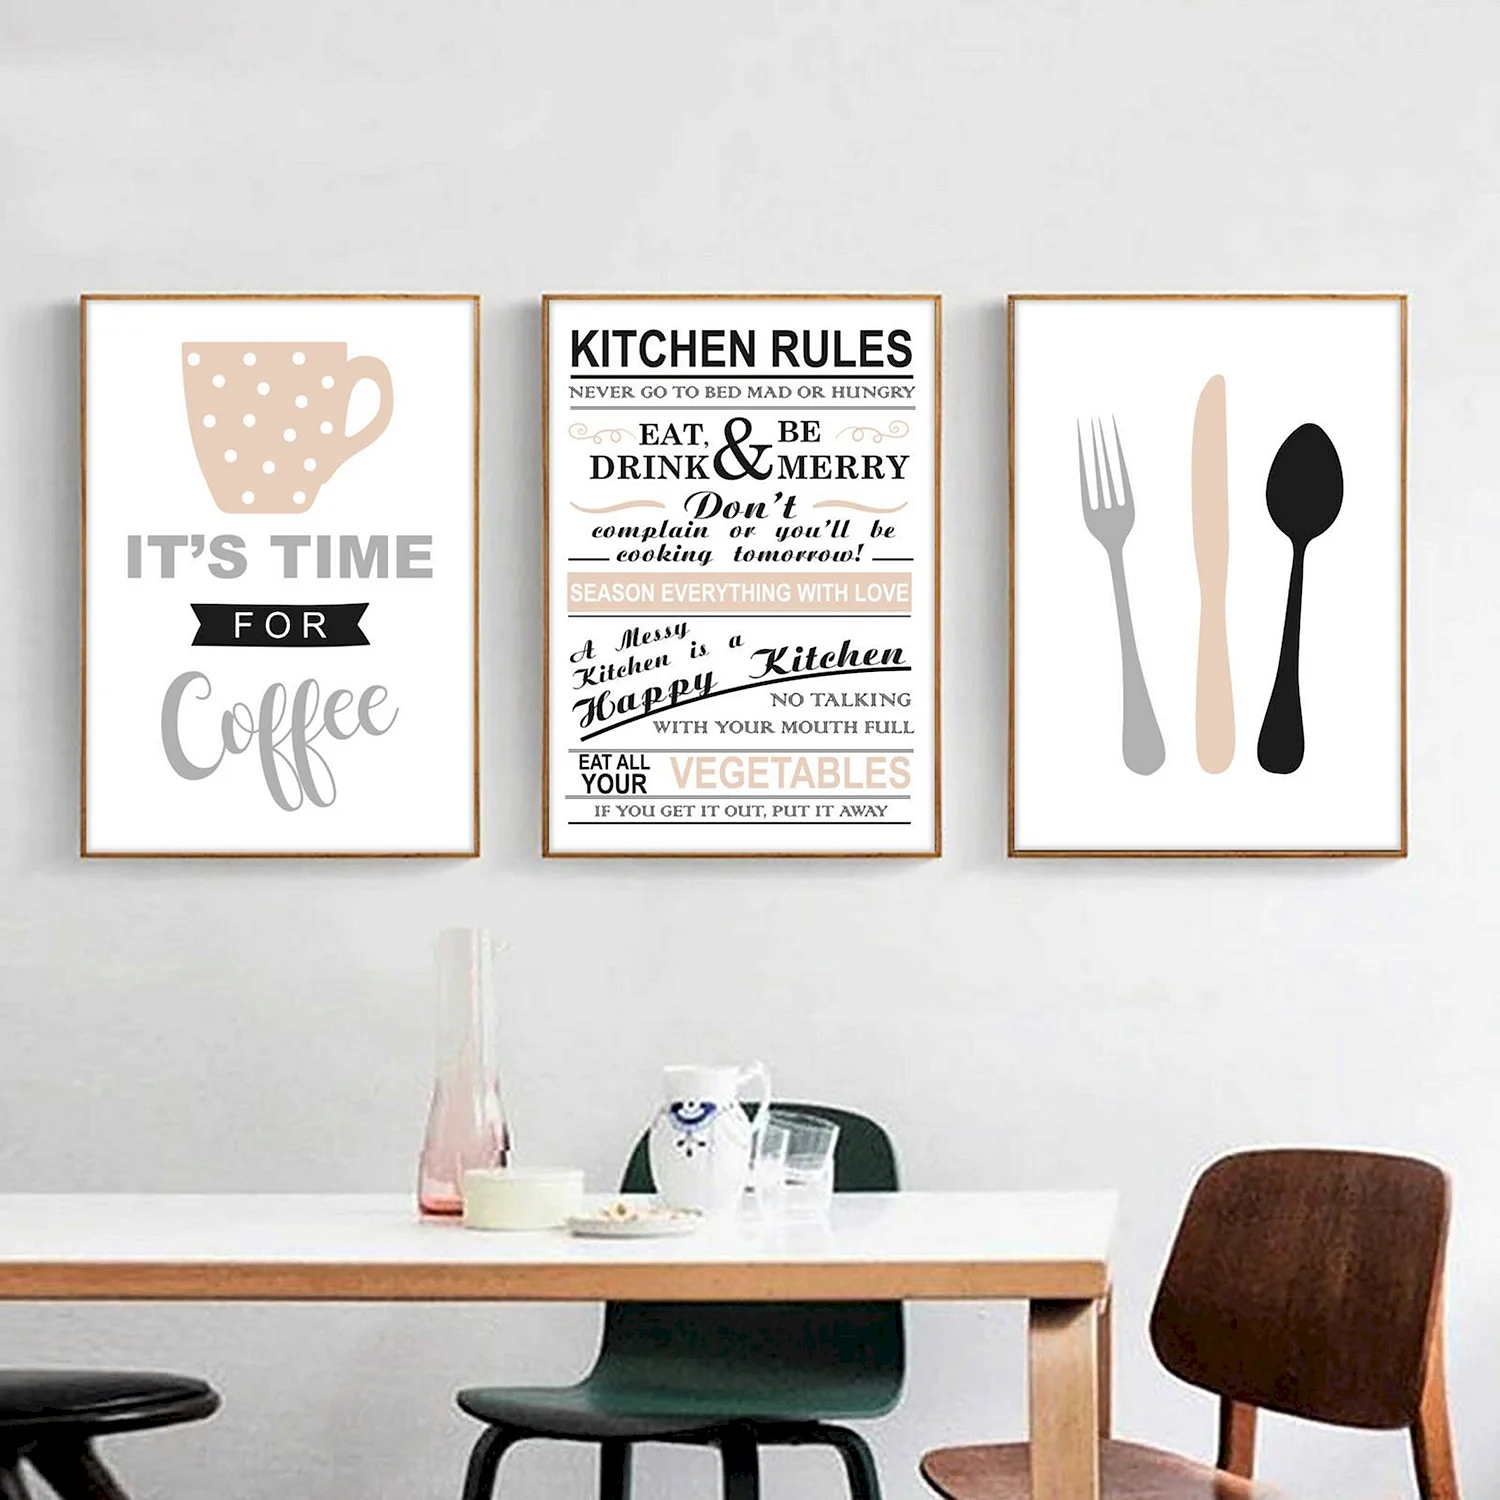 Постеры на кухню